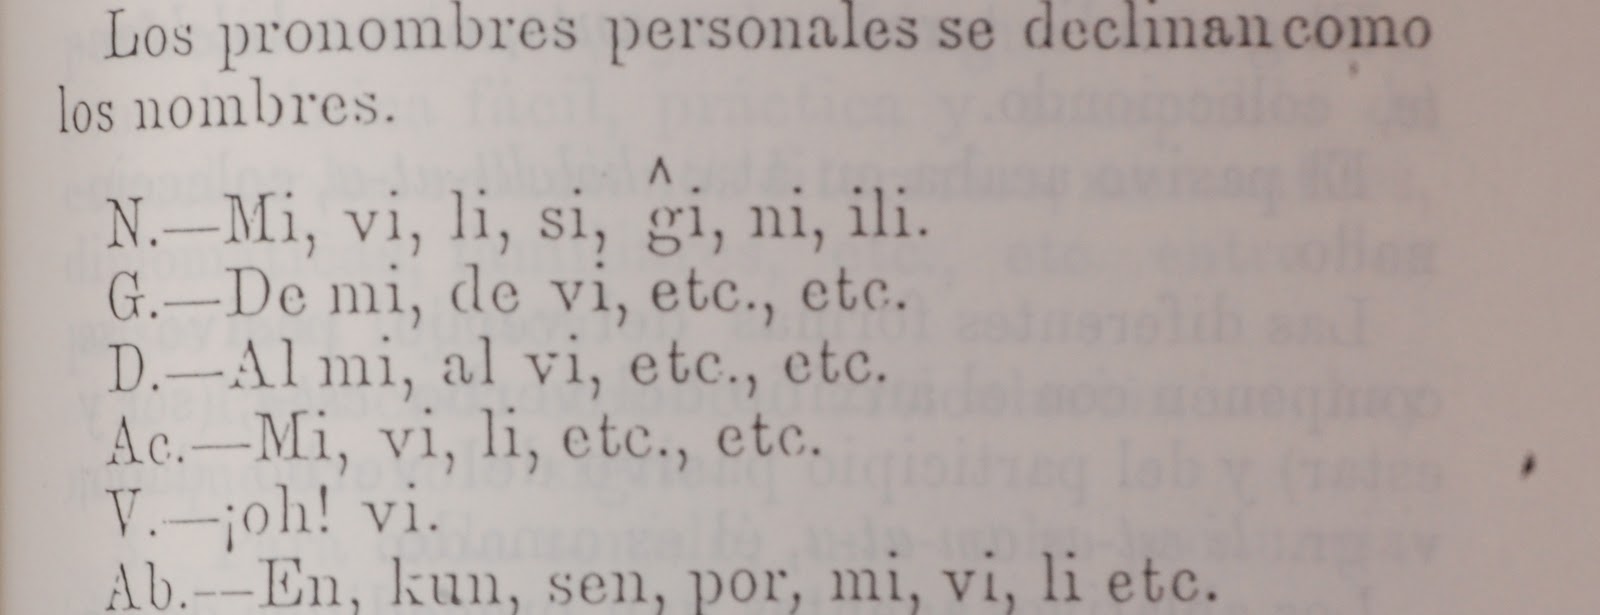 Los pronombres personales del esperanto, según Rodríguez Huertas